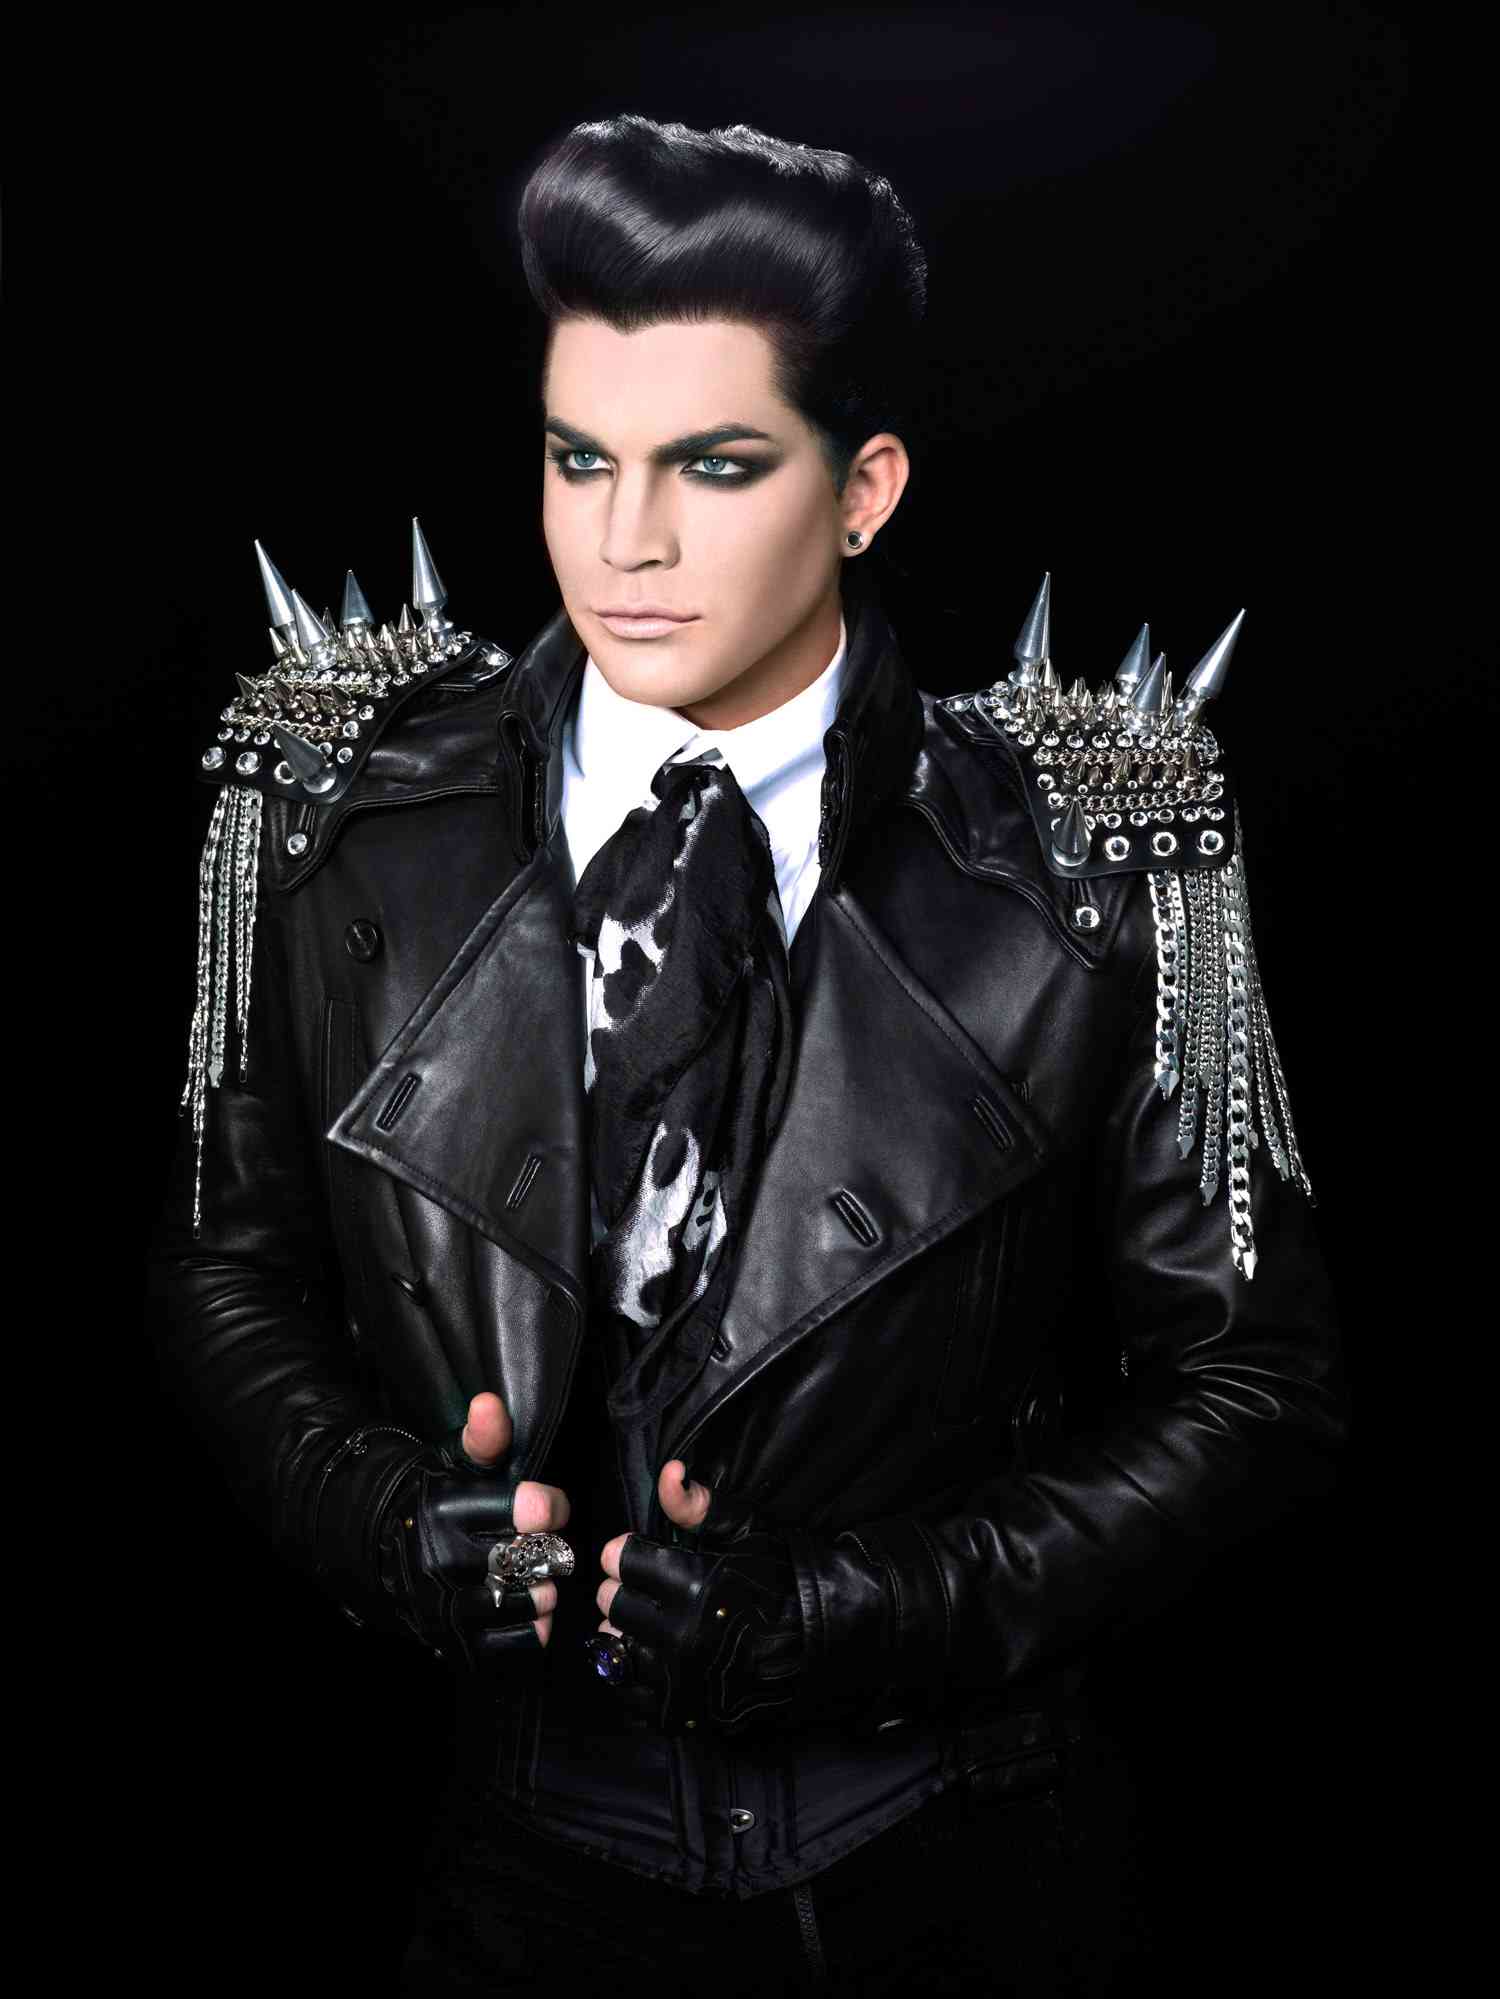 Iconic Image of Adam Lambert, queen vocalist by Warwick Saint of the Saint Studio